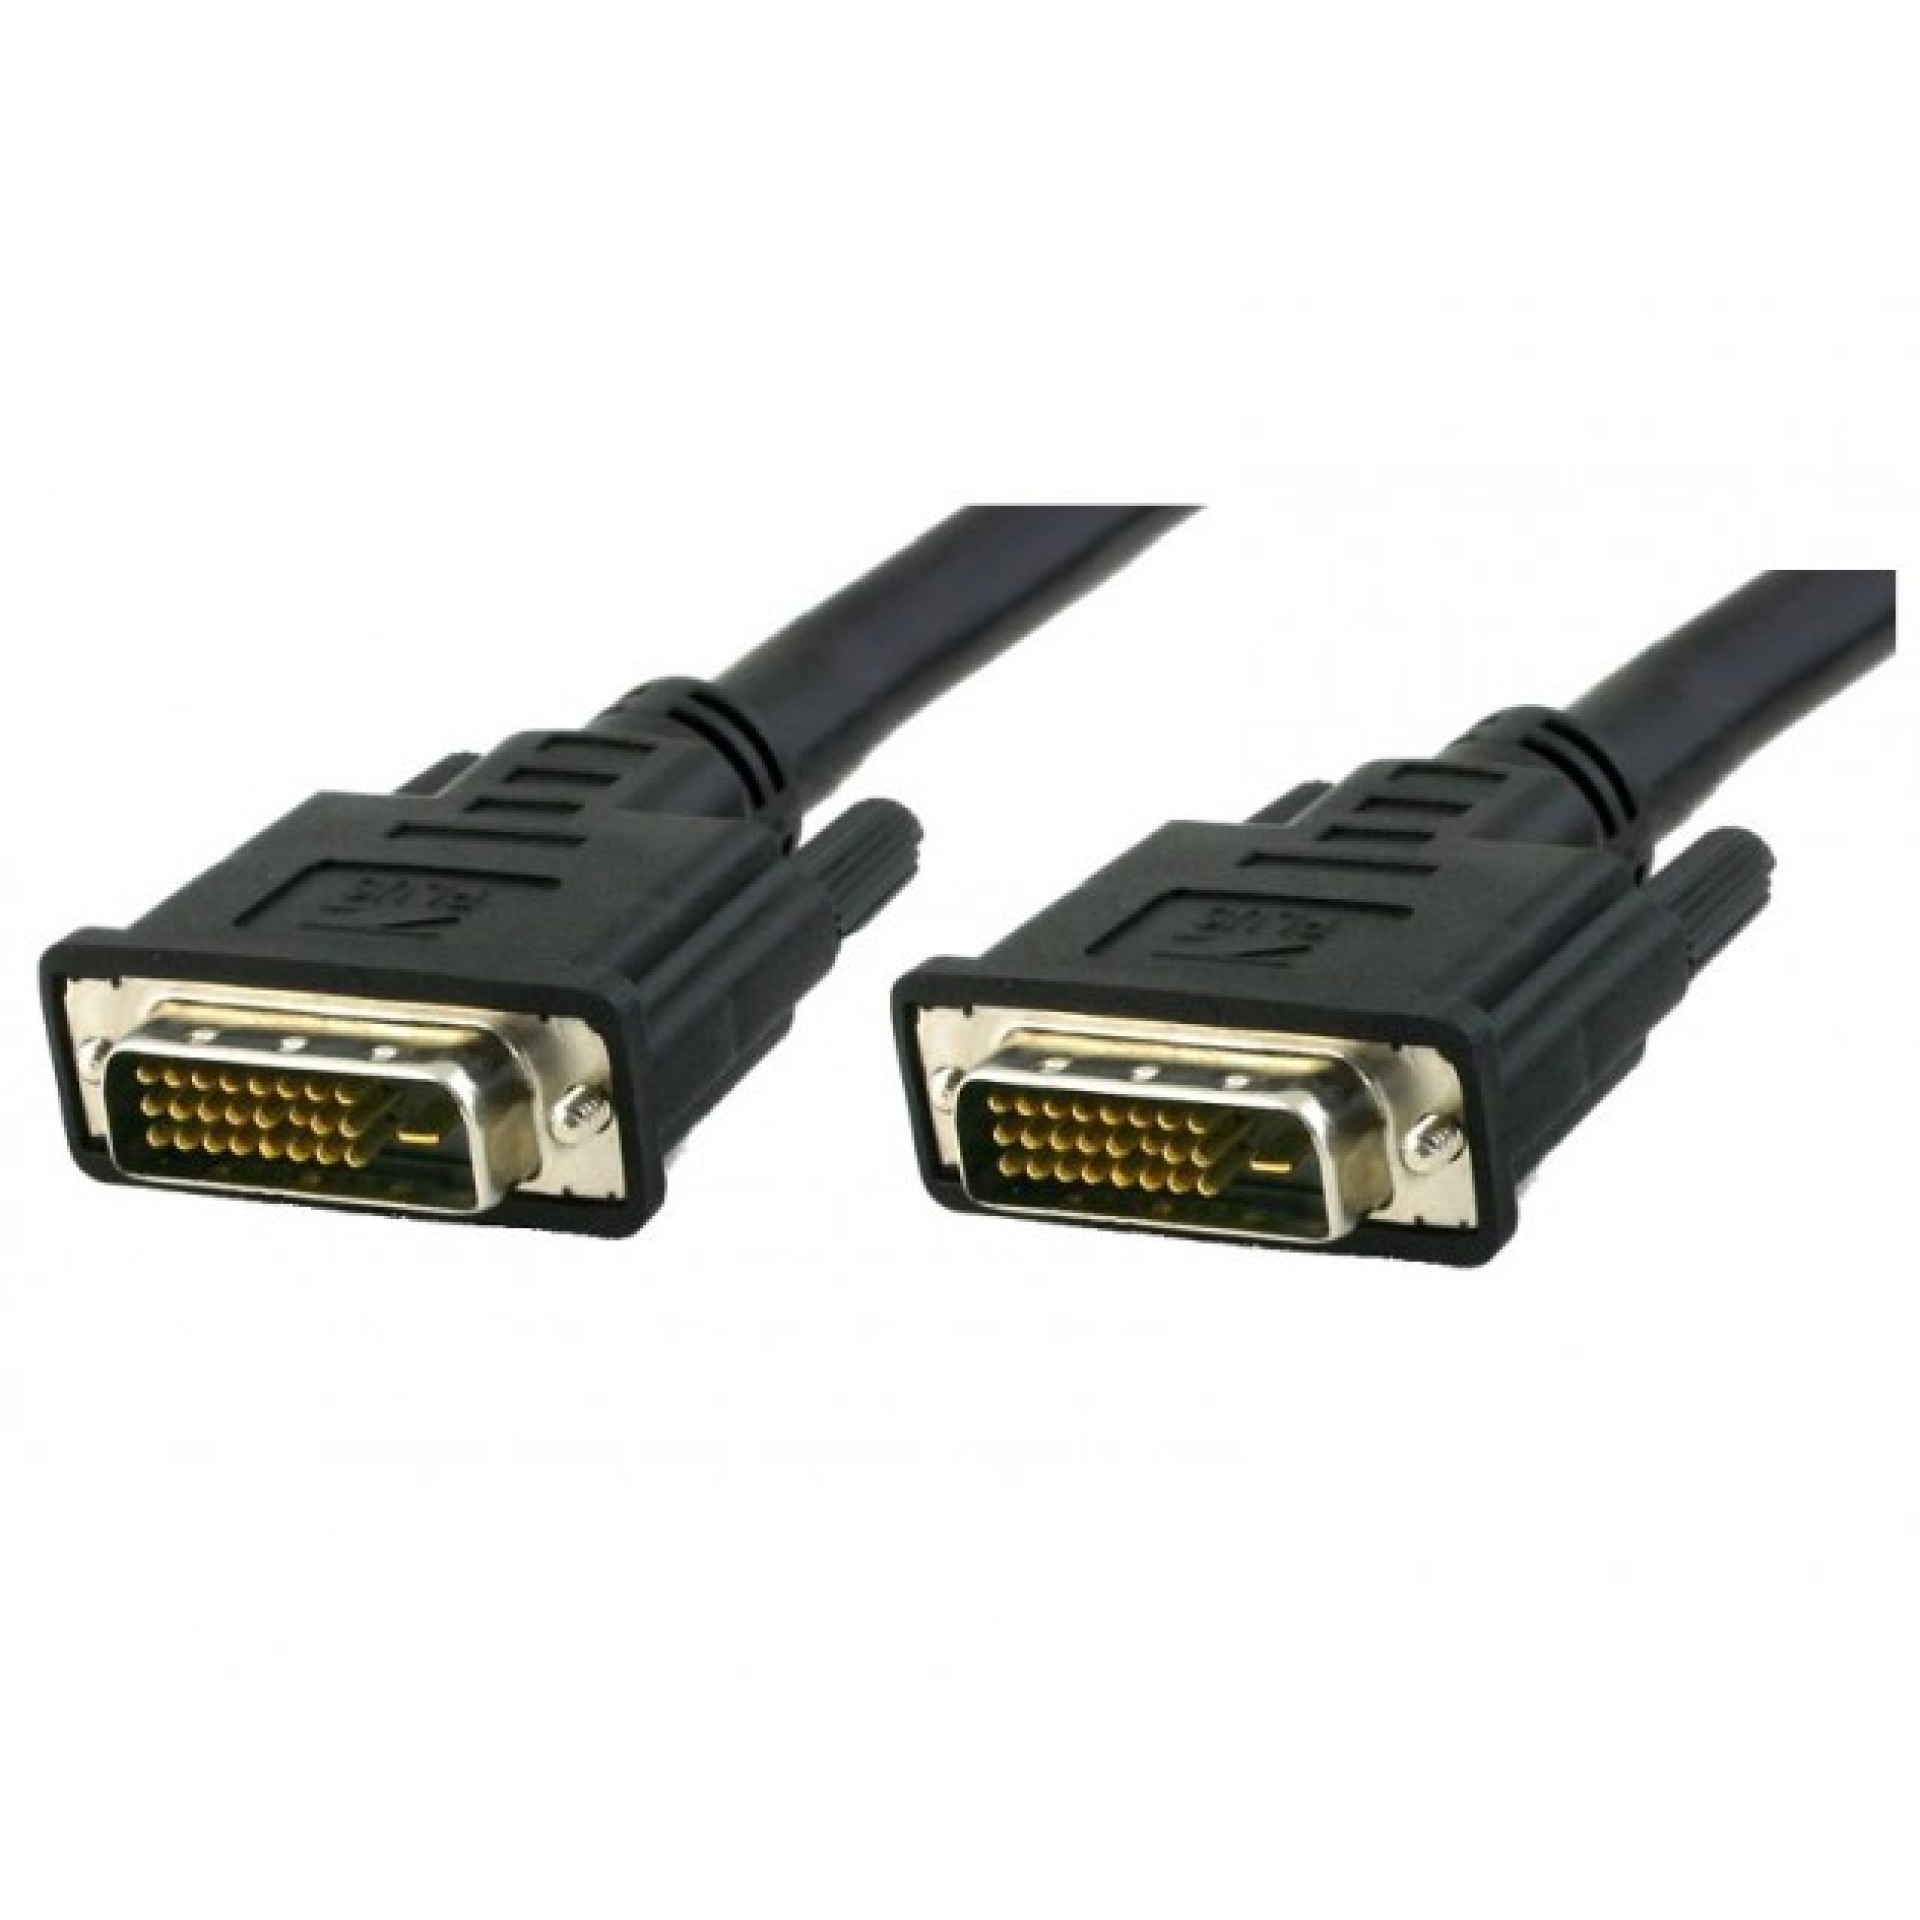 DVI-D Dual-Link Connecting cable M / M, black, 1.8 m